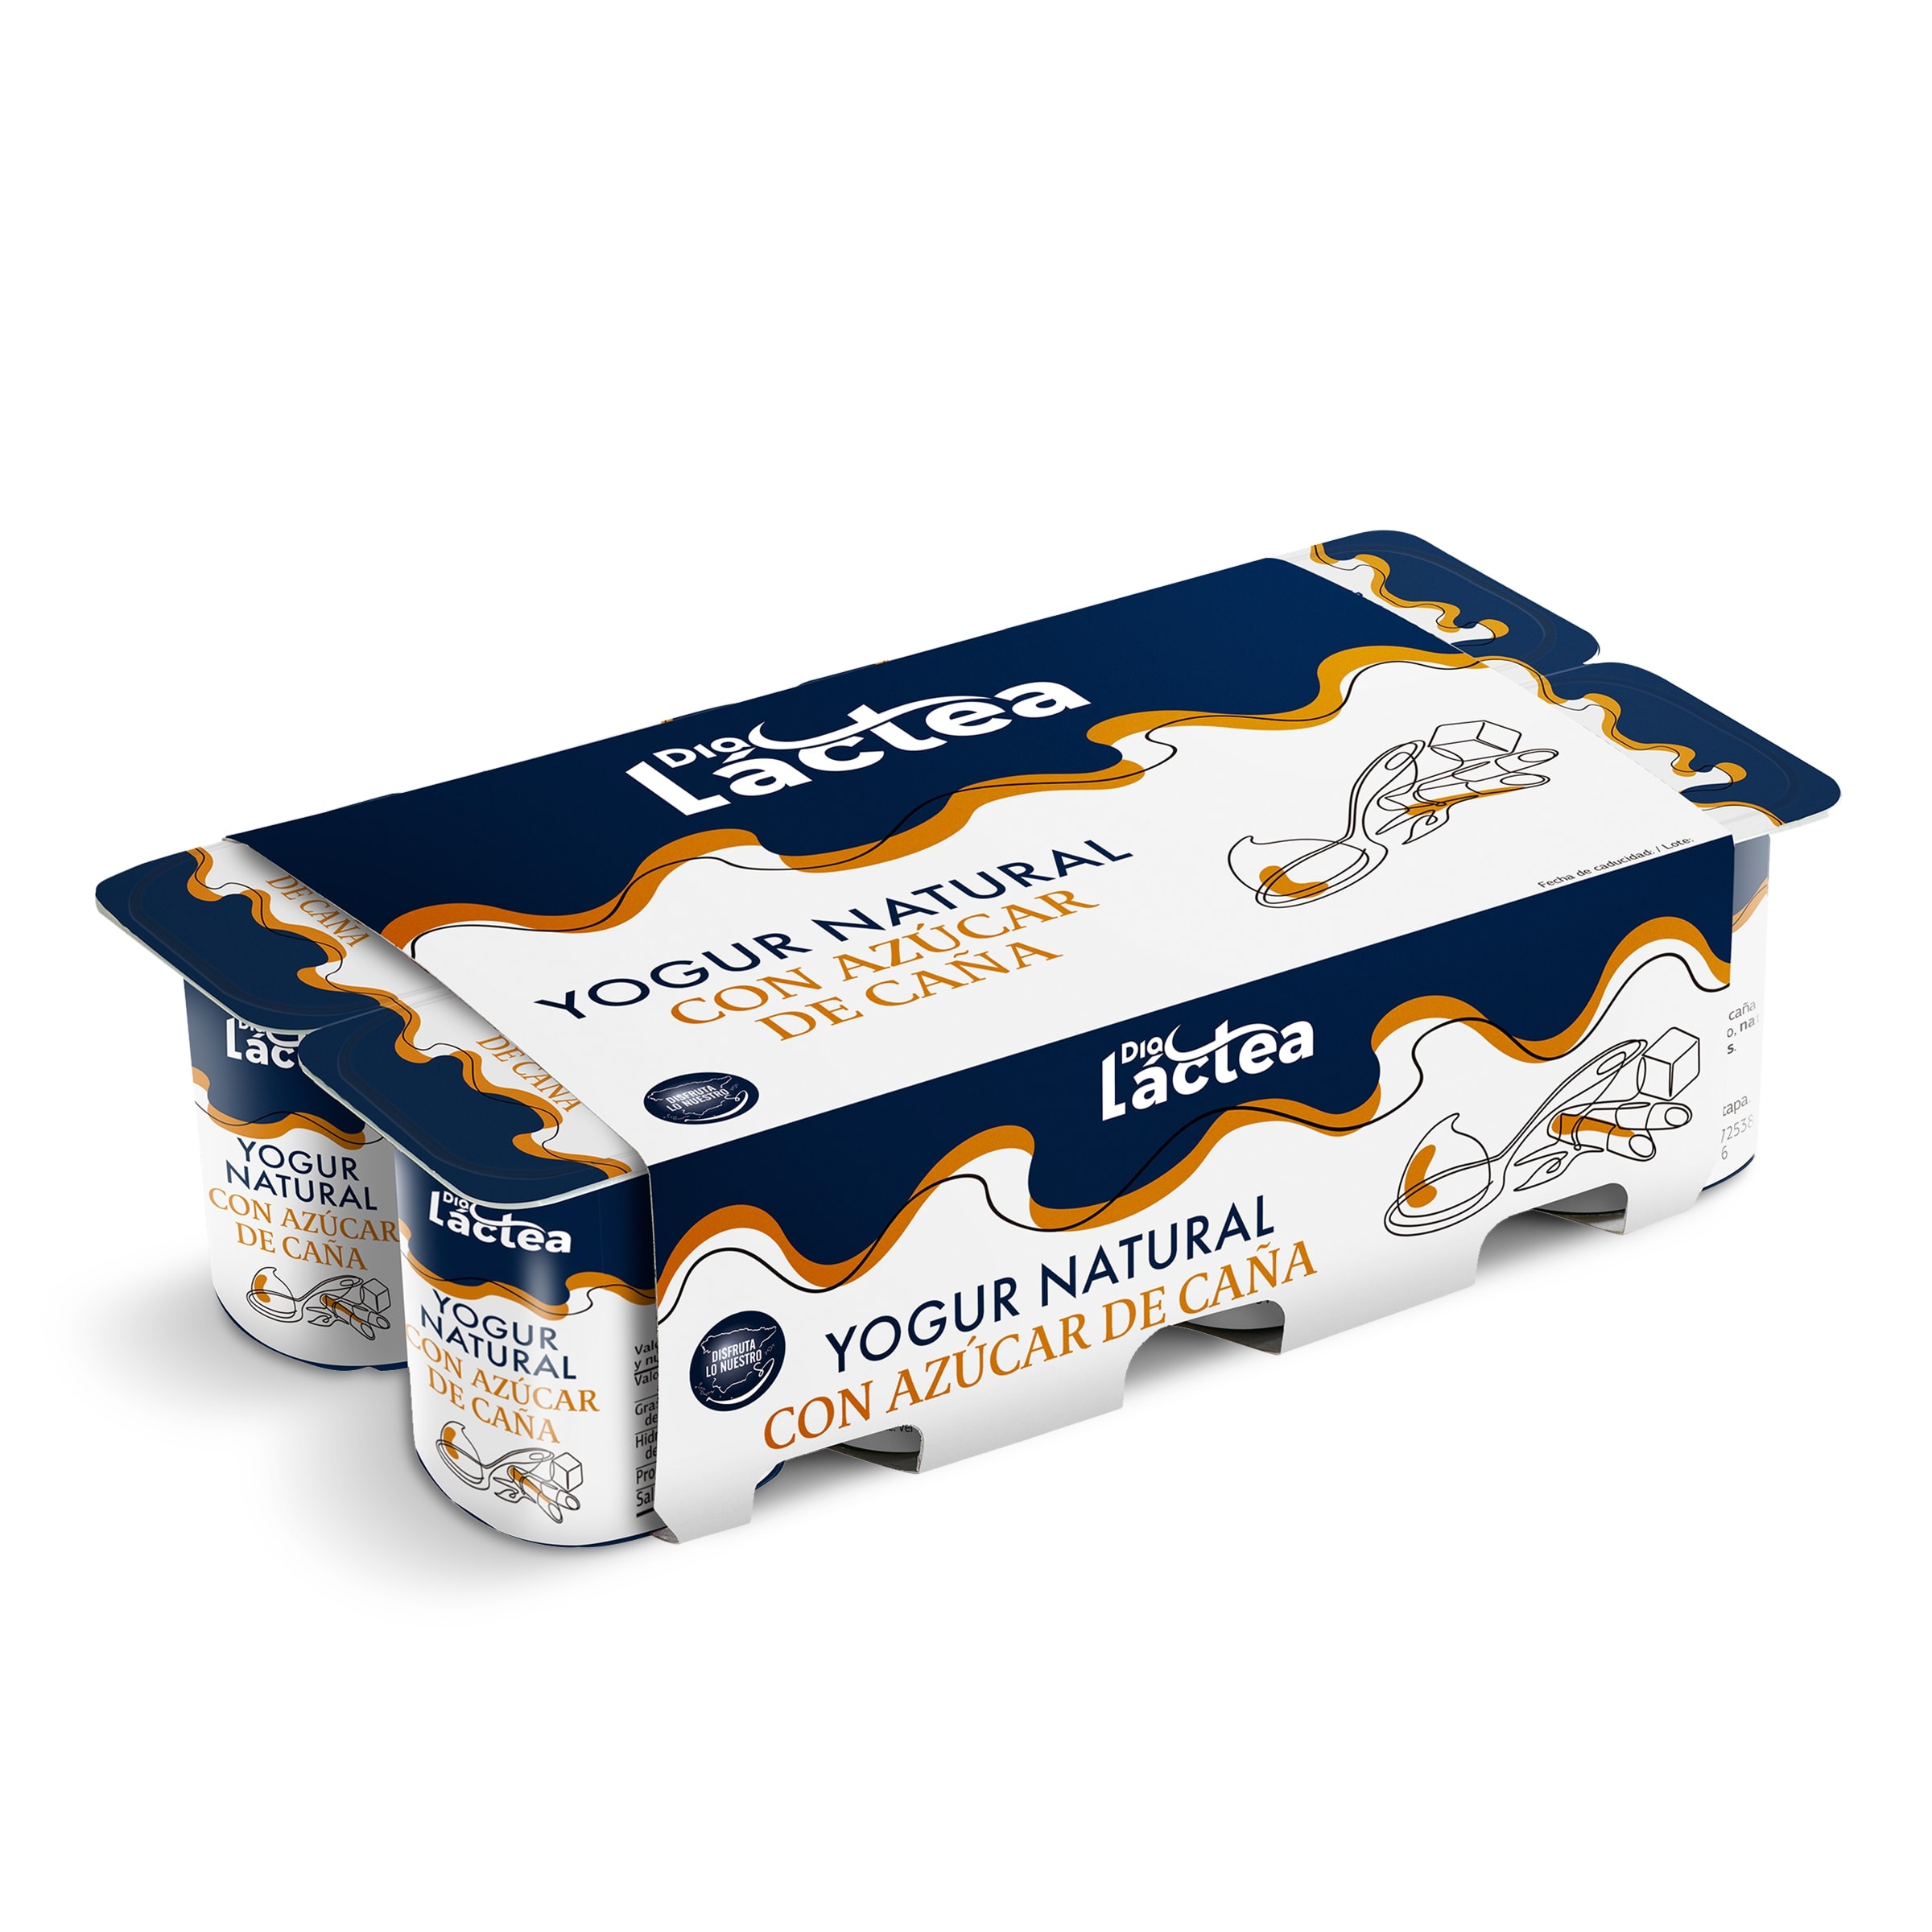 Comprar Yogur natural azucarado danone en Supermercados MAS Online